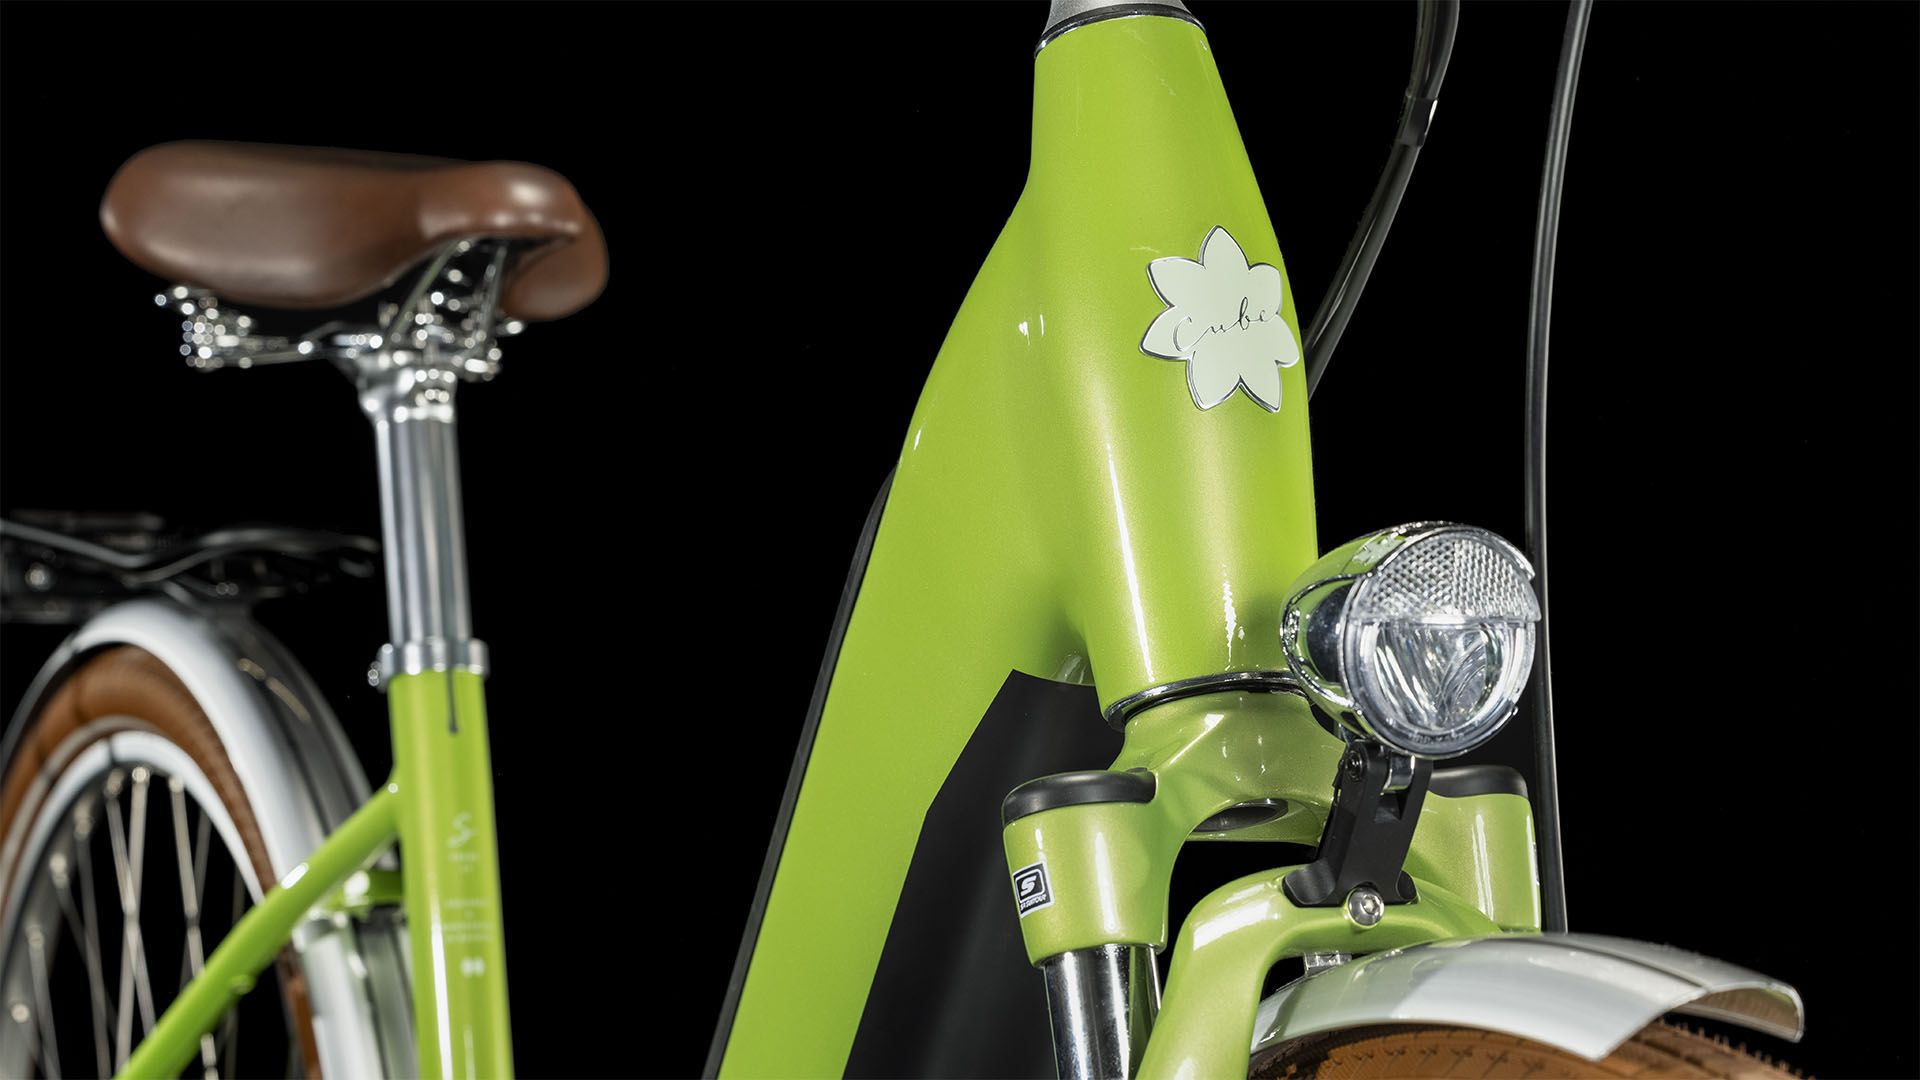 Cube Ella Ride Hybrid 500 Wave green´n´green (2023) - Fahrrad Online Shop